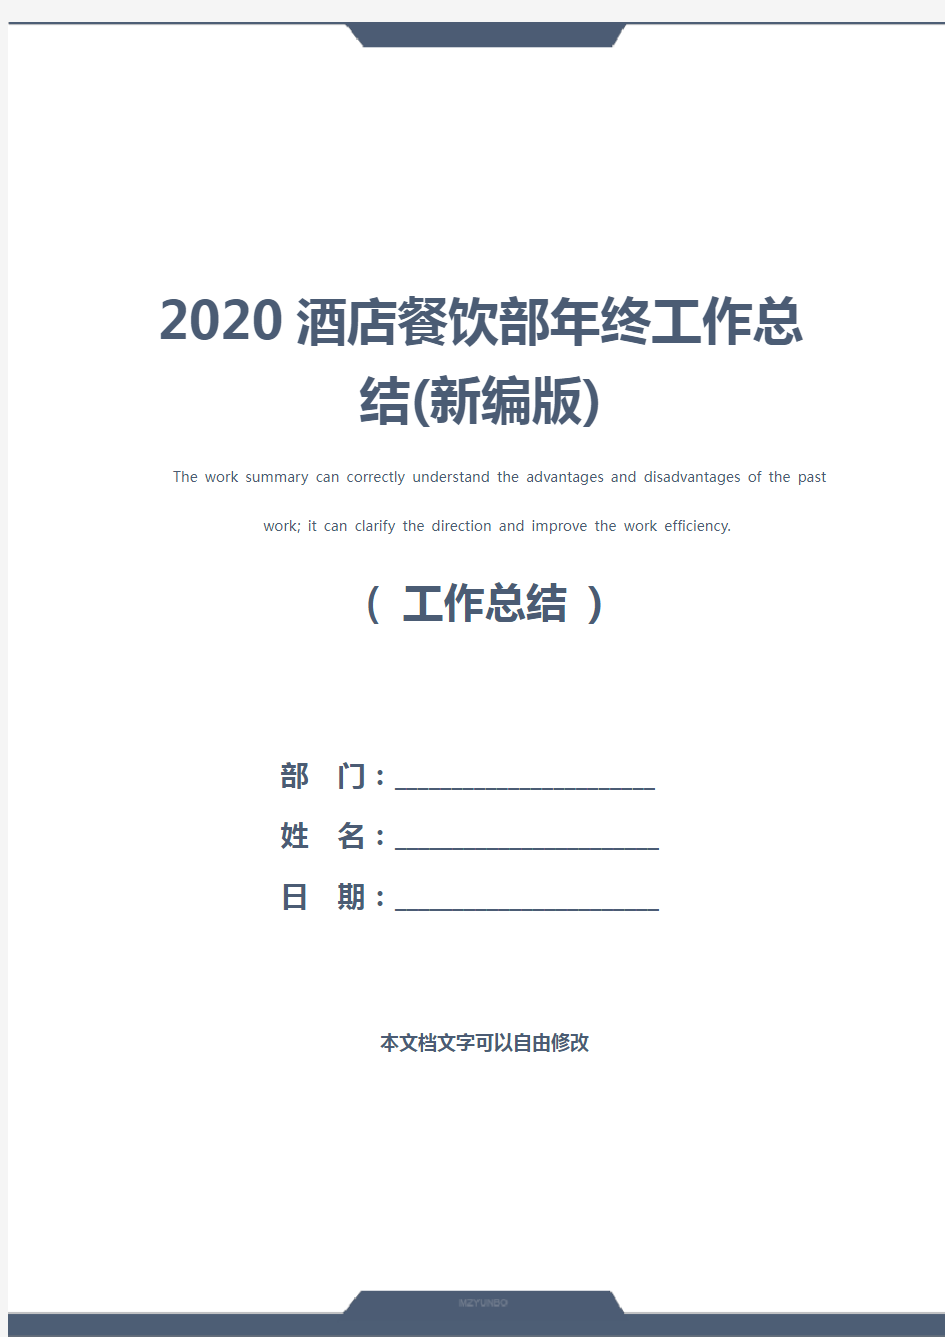 2020酒店餐饮部年终工作总结(新编版)